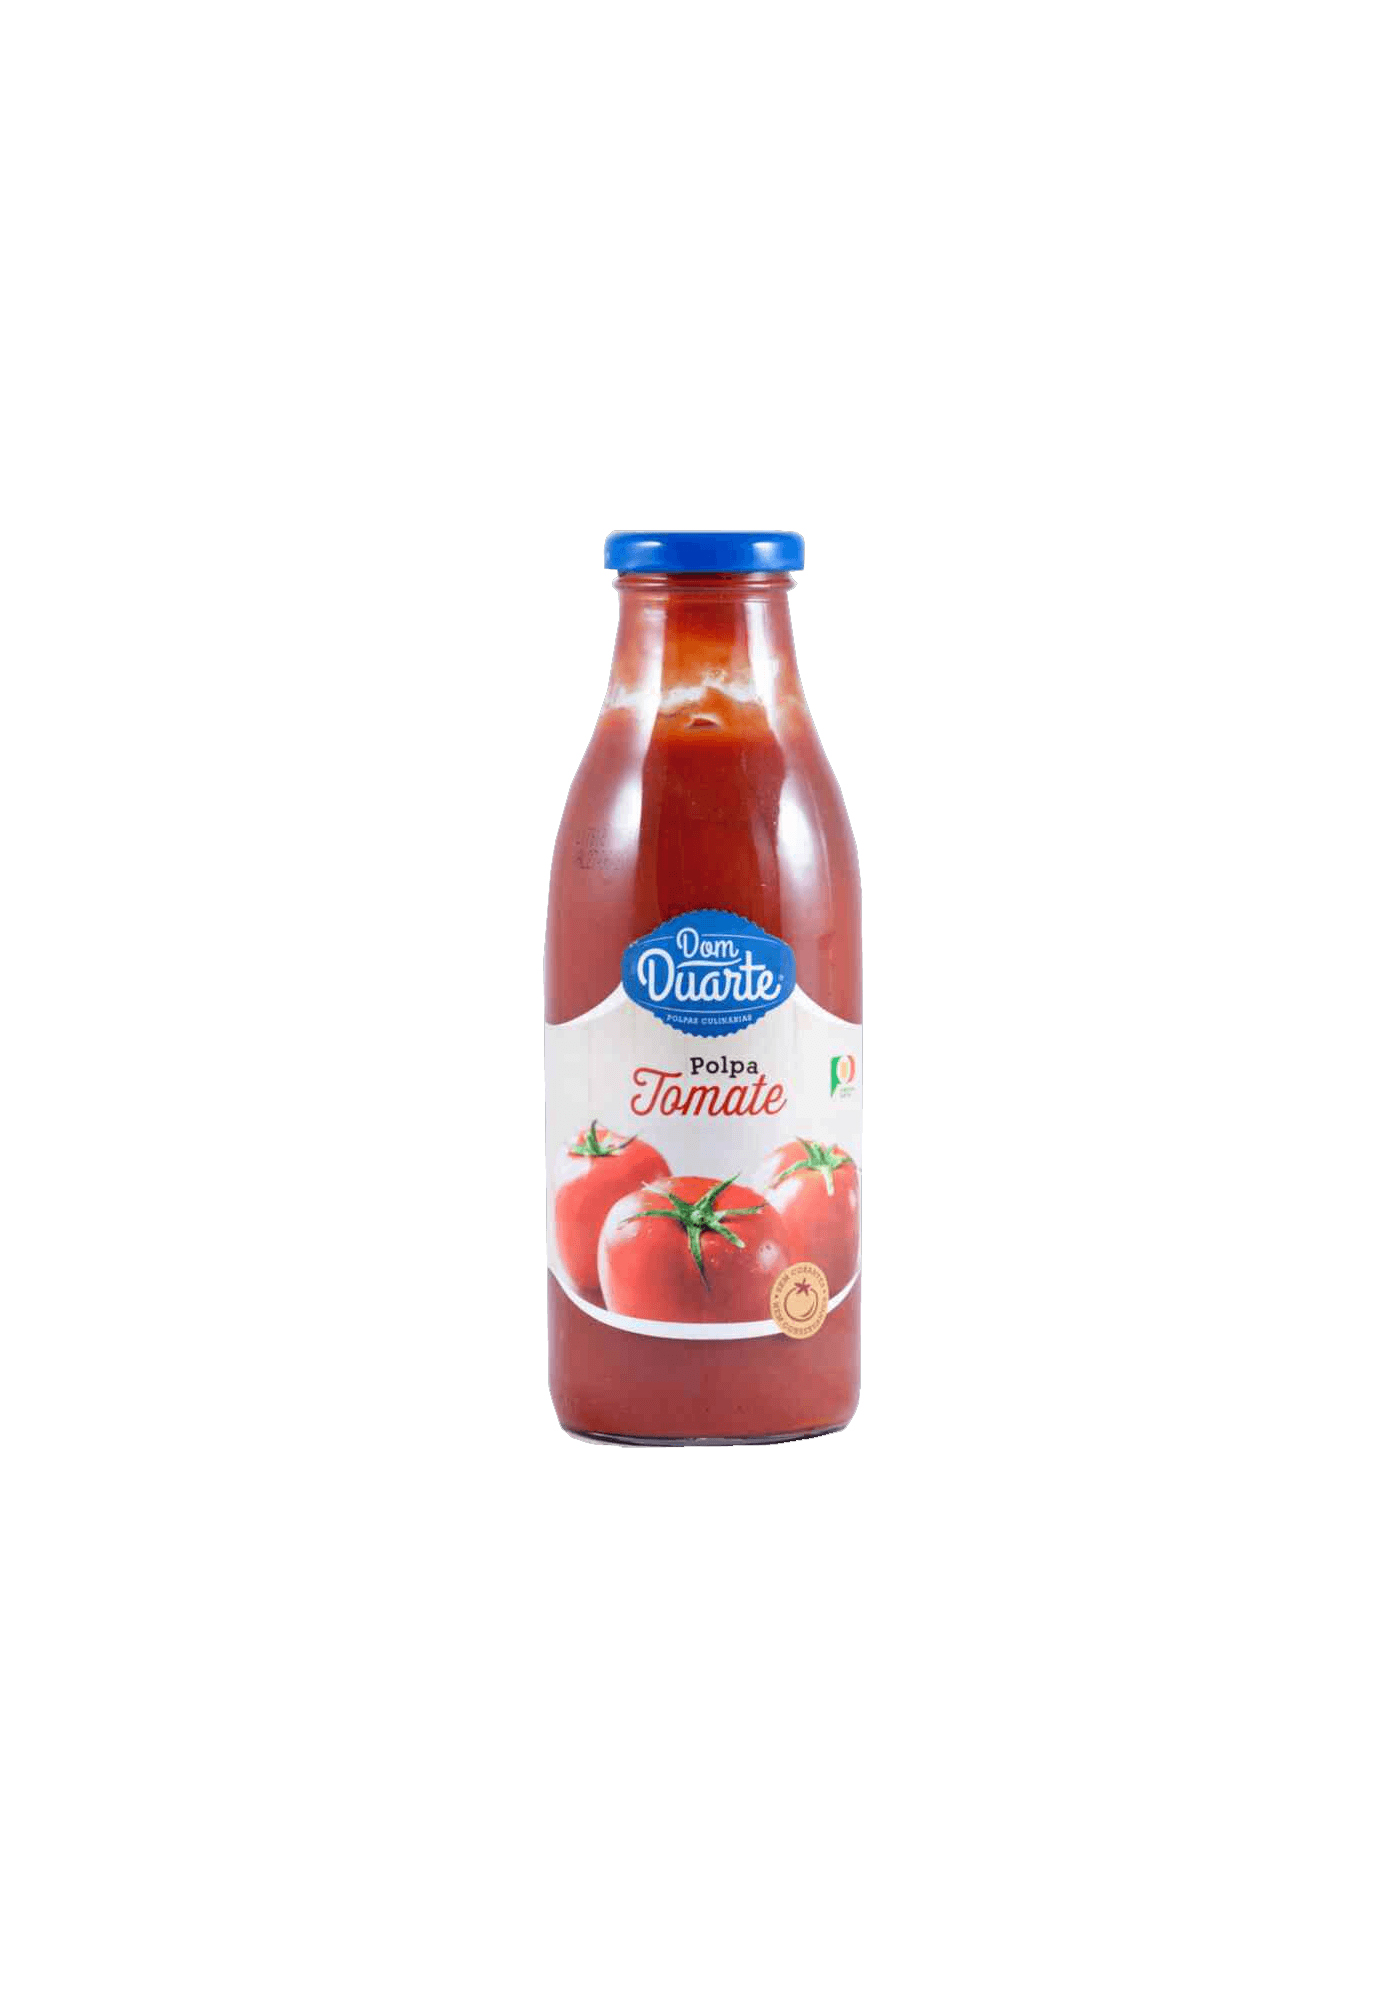 polpa tomate 500g Dom Duarte